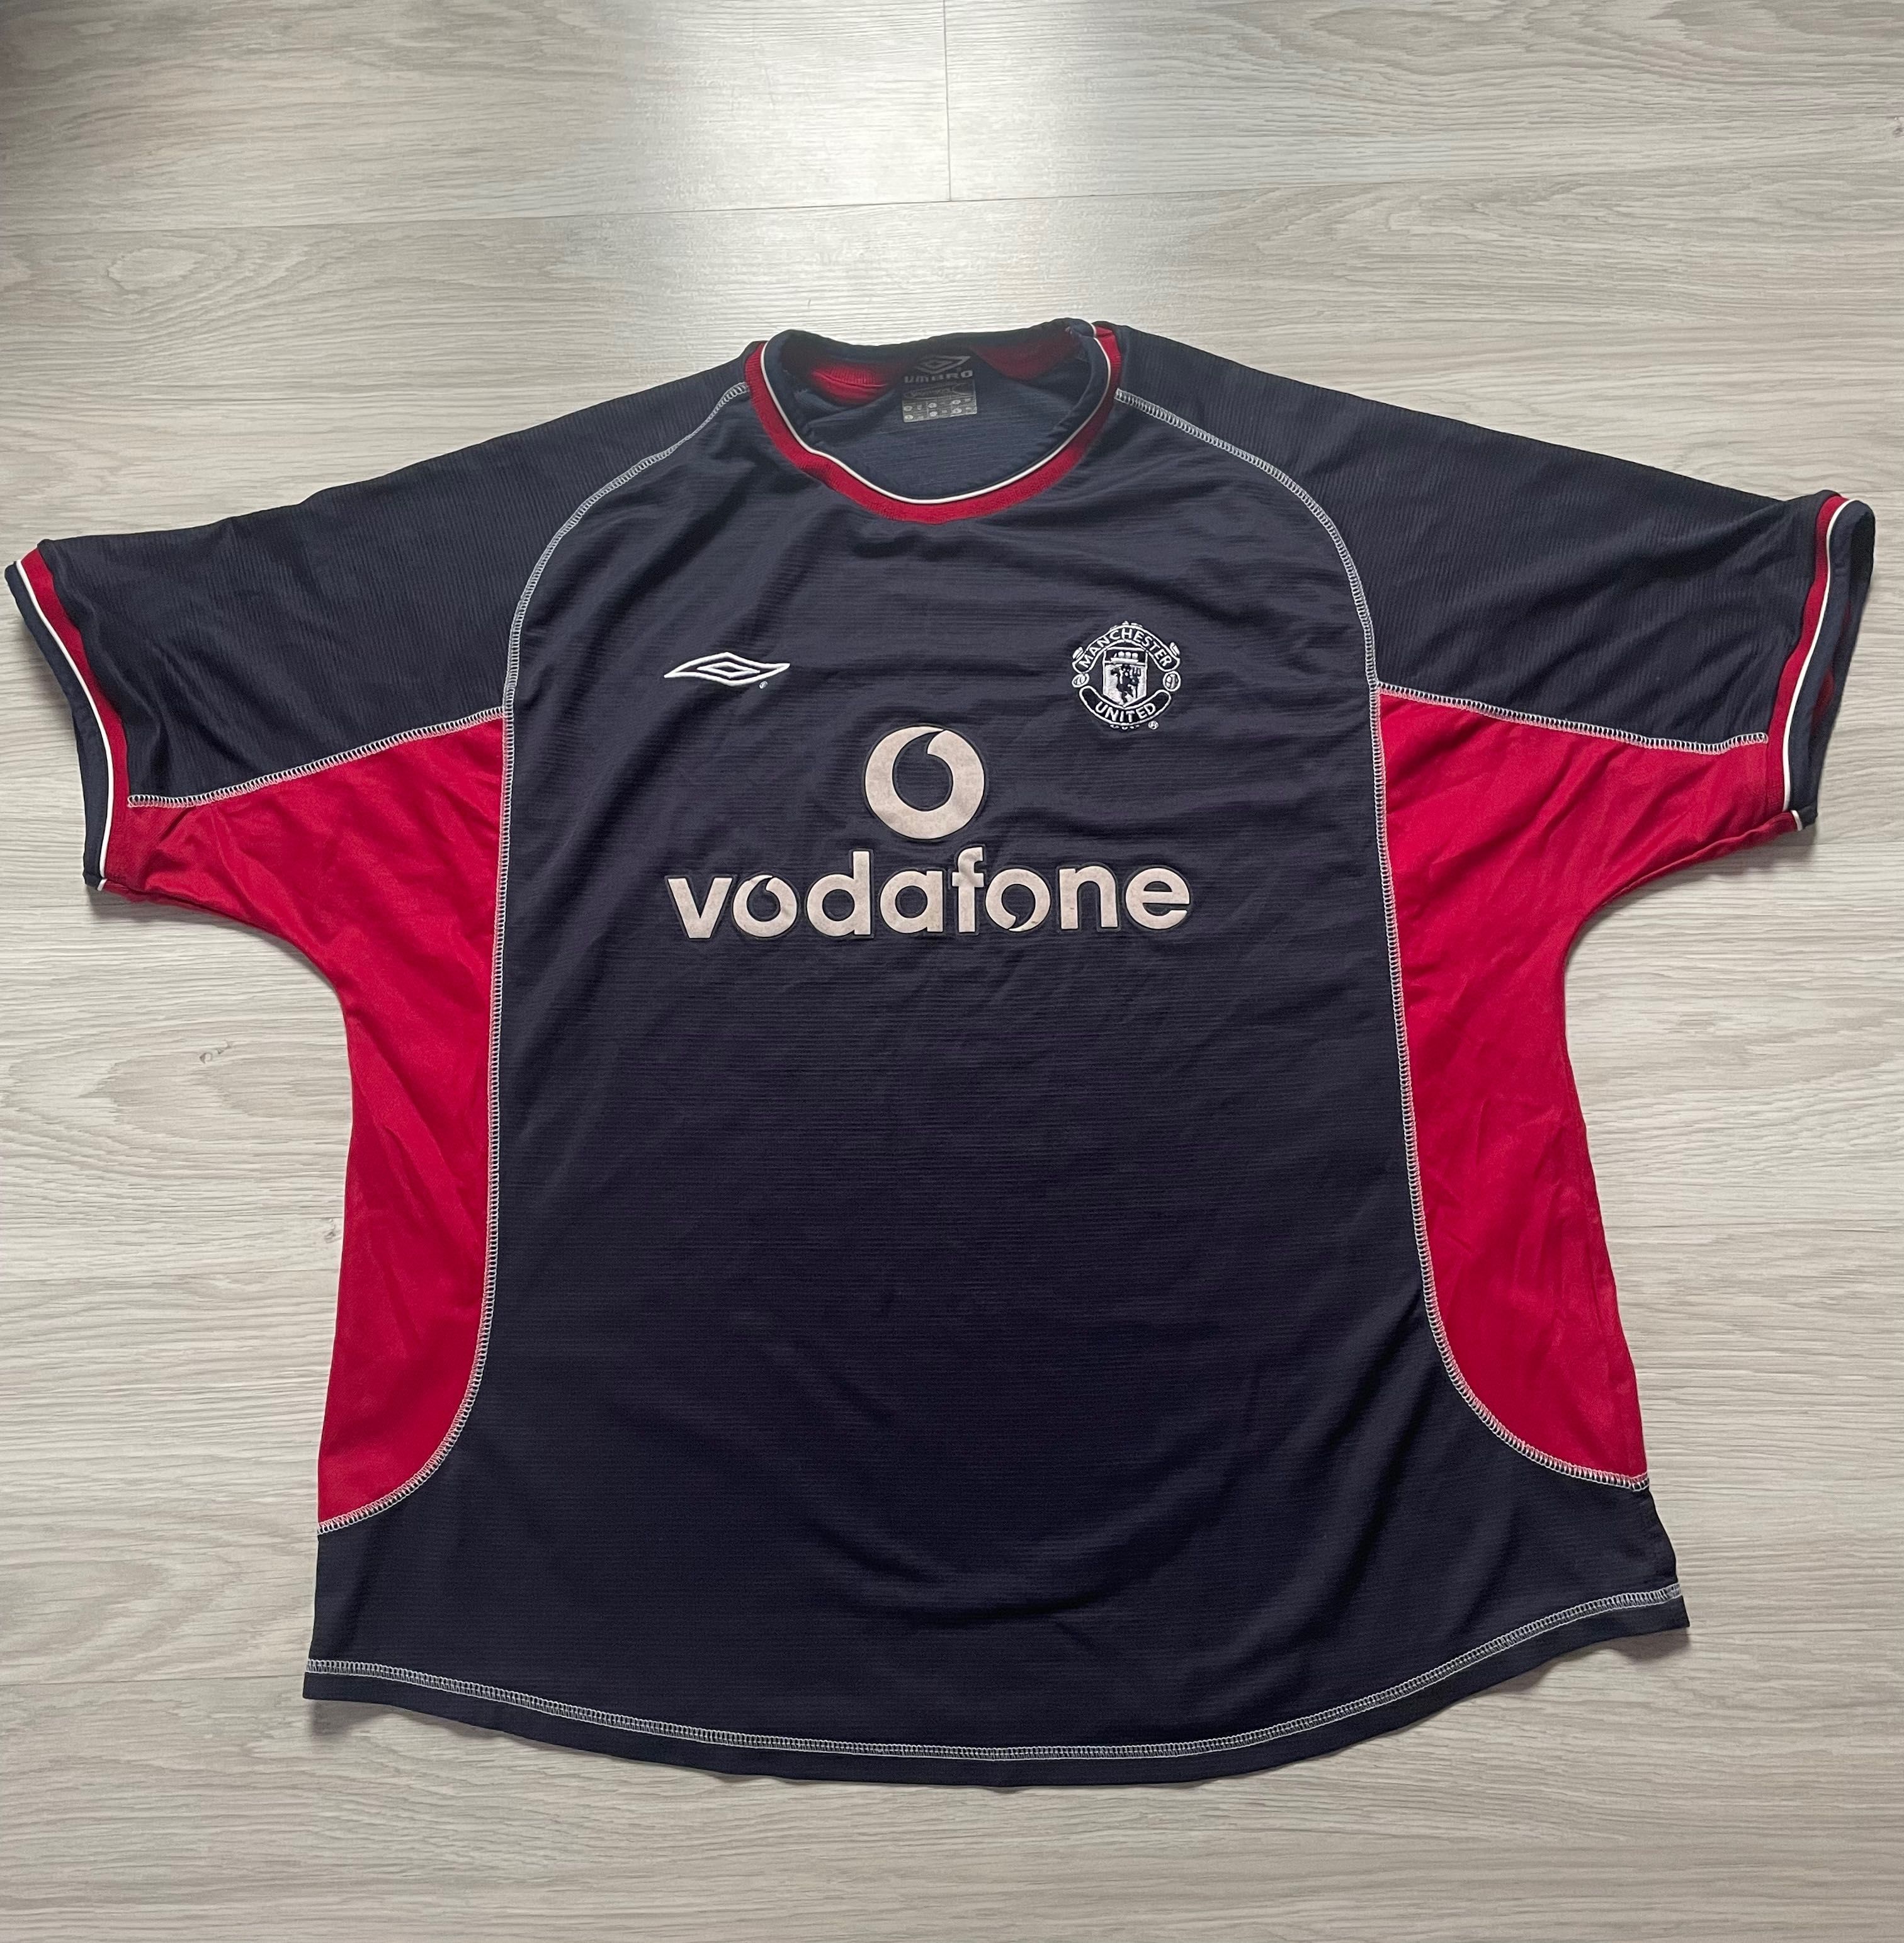 Koszulka bluzka t-shirt Umbro Manchester United 2000/2001 Vodafone XXL